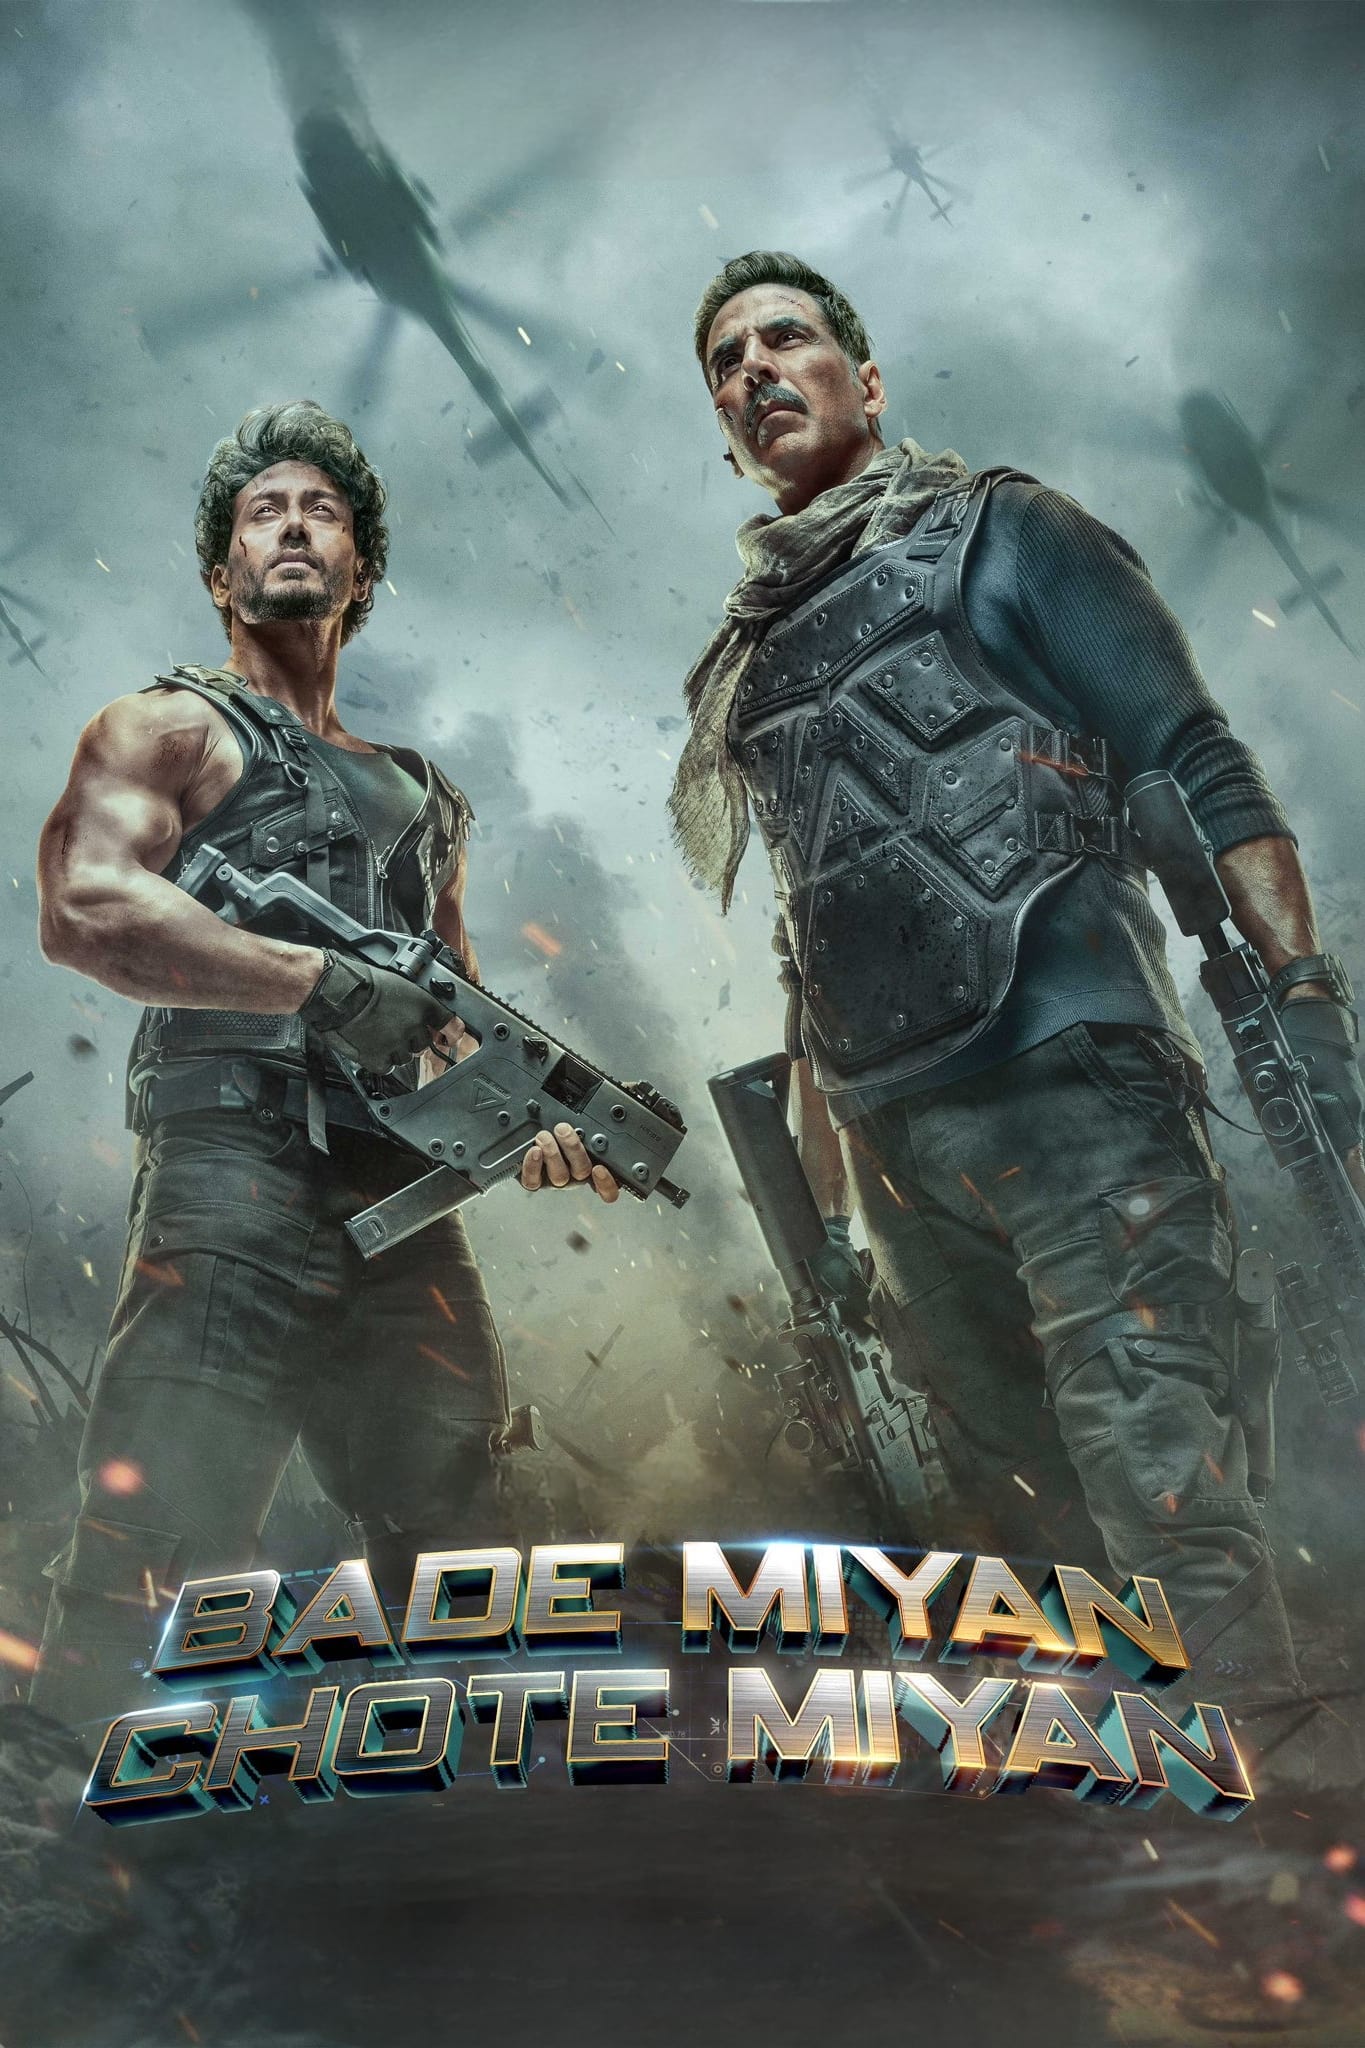 Poster for the movie "Bade Miyan Chote Miyan"